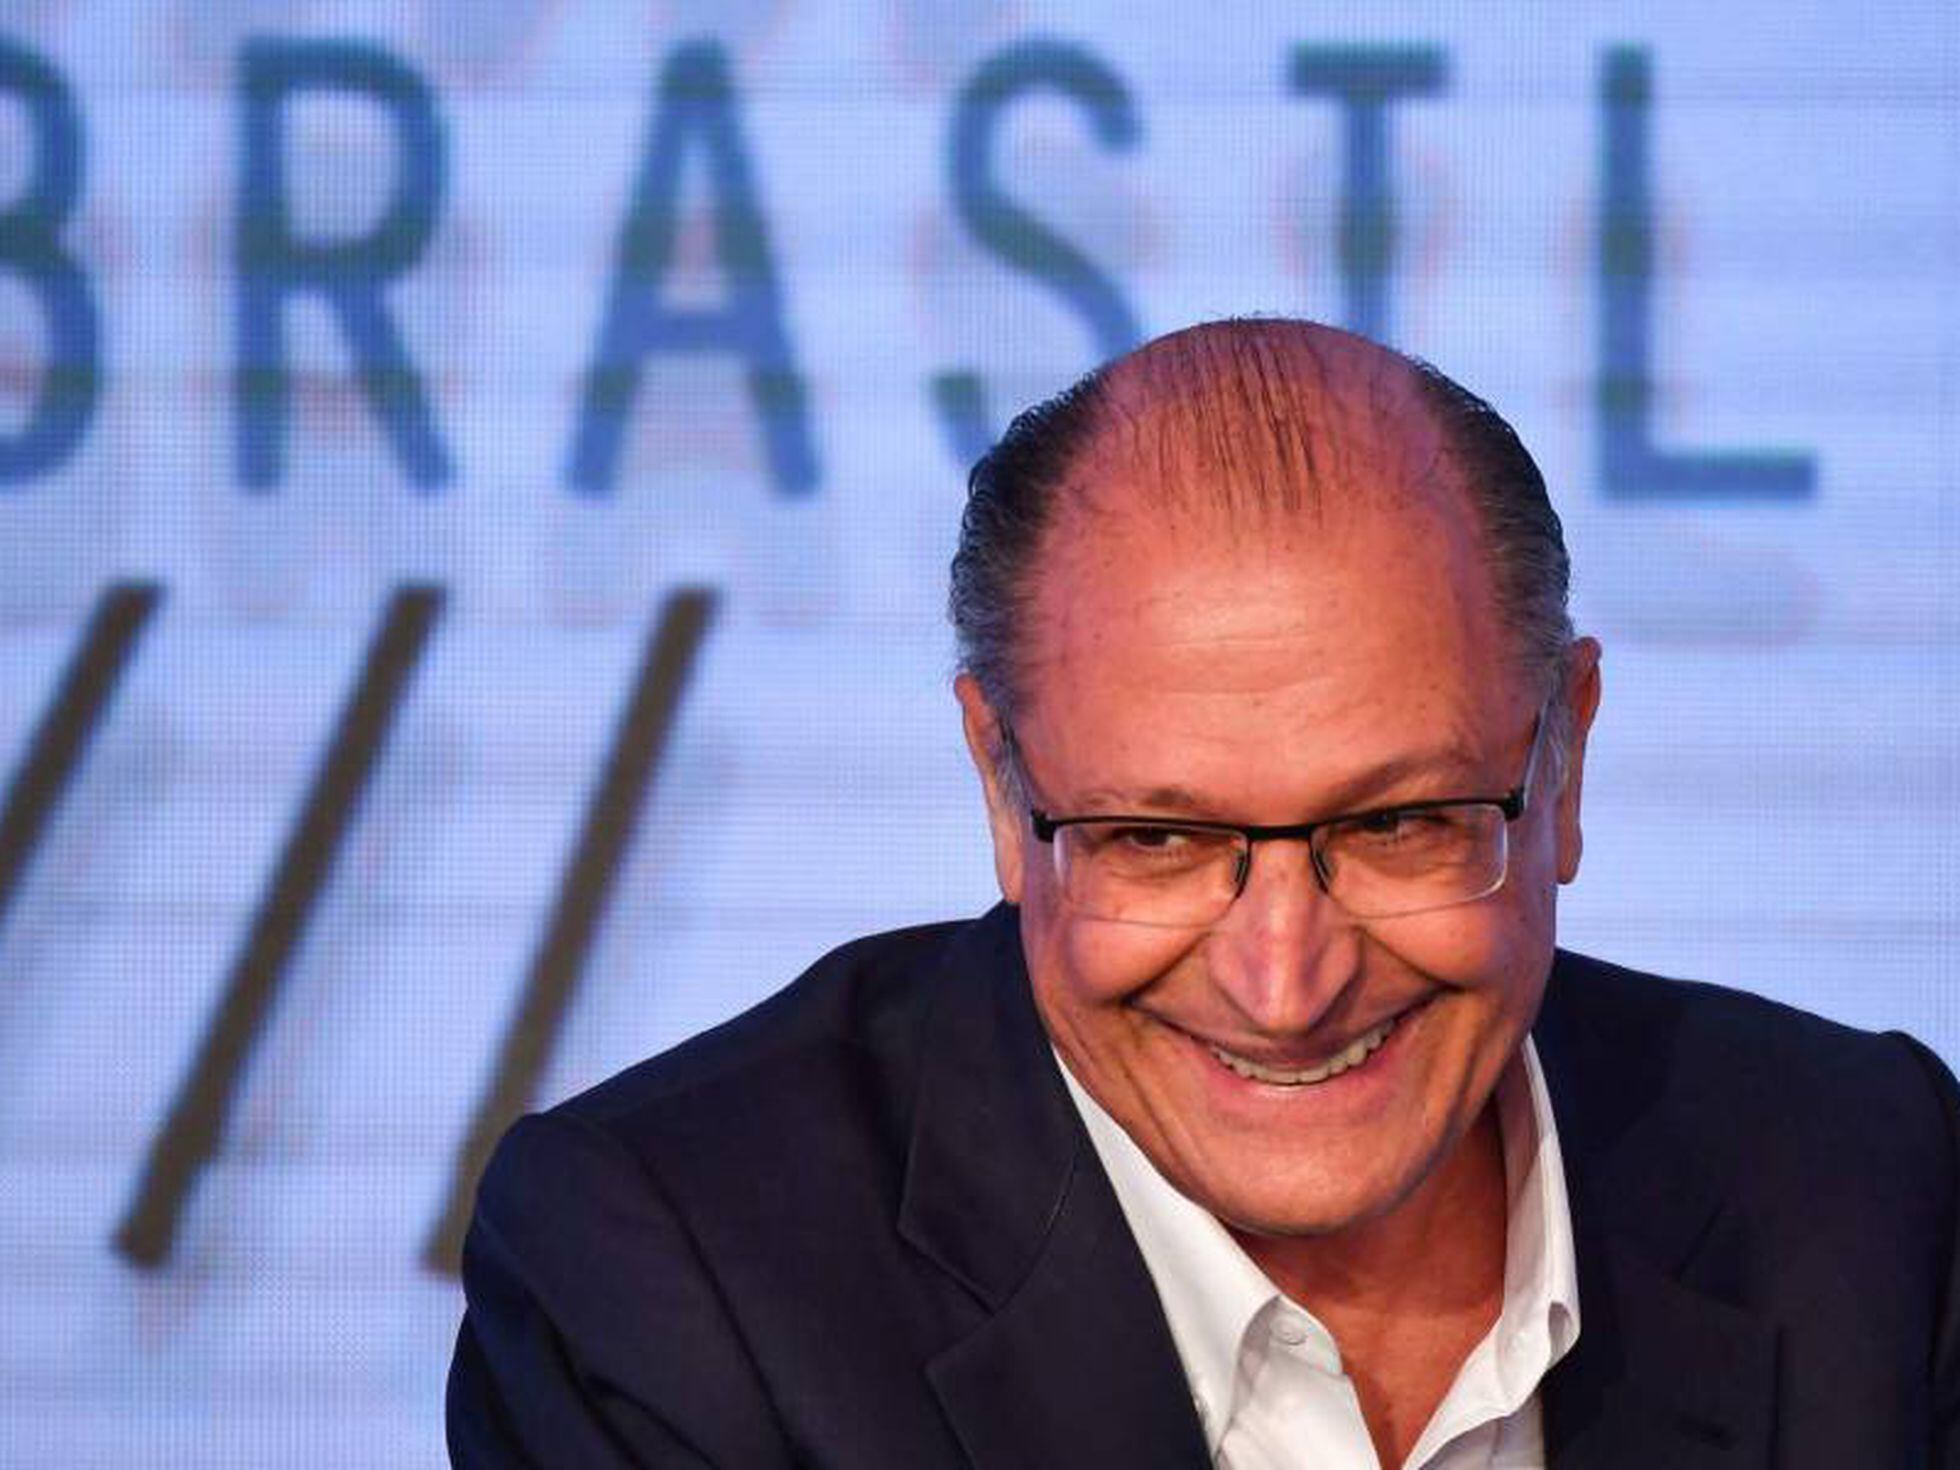 Alckmin compara evolução de propostas do governo com Goku e